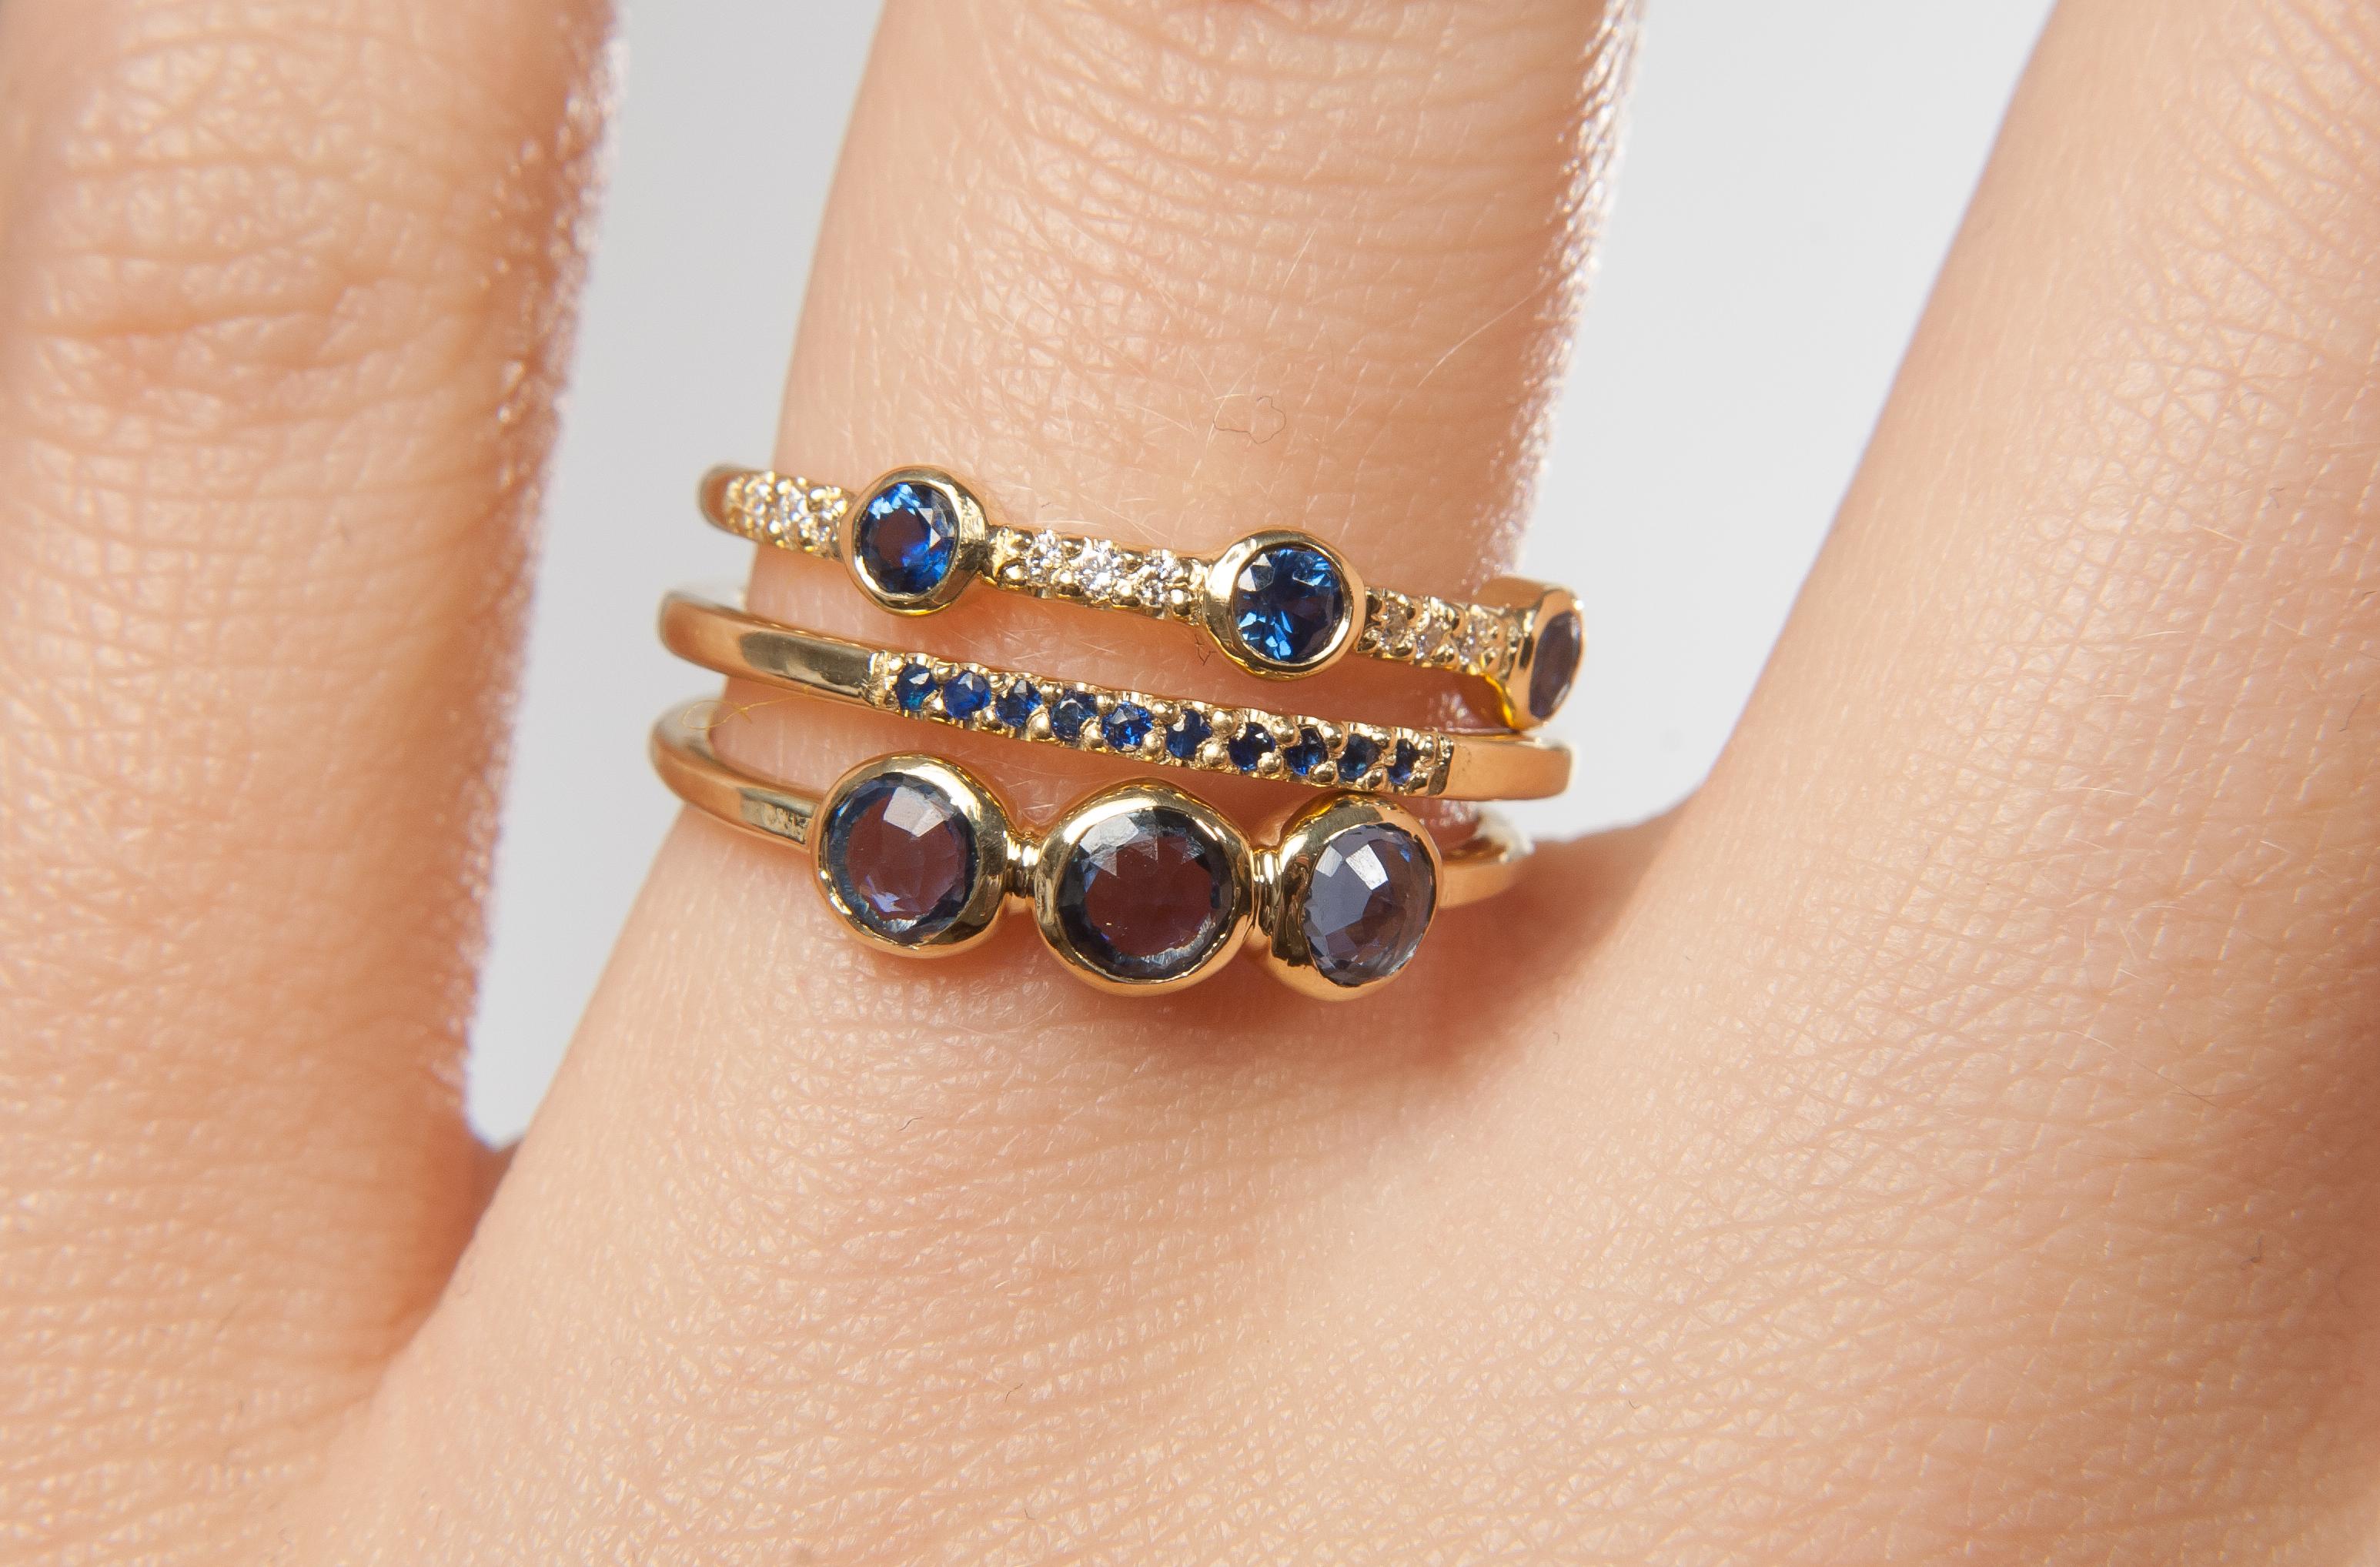 Un trio de saphirs d'un bleu profond est rehaussé de diamants blancs sertis en pavé sur ce délicat bracelet en or.

Bracelet en or jaune 18 carats présentant trois saphirs bleus sertis entre des diamants blancs pavés.